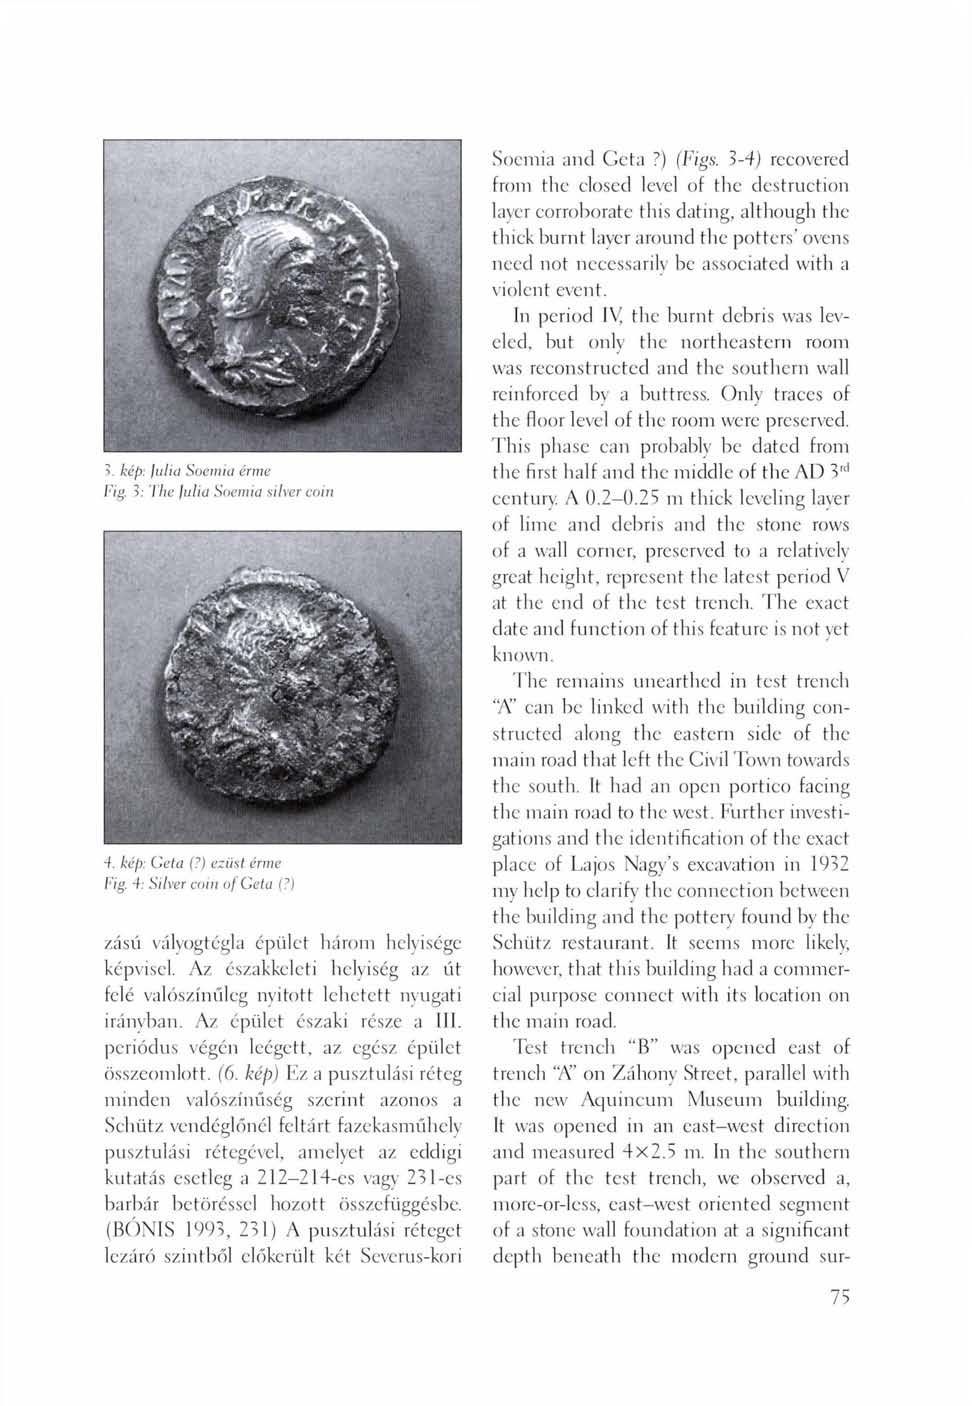 kép: Julia Soemia érme Fig. 3: The Julia Soemia silver coin 4. kép: Geta (?) ezüst érme Fig. 4: Silver coin of Geta (?) zású vályogtégla épület három helyisége képvisel.